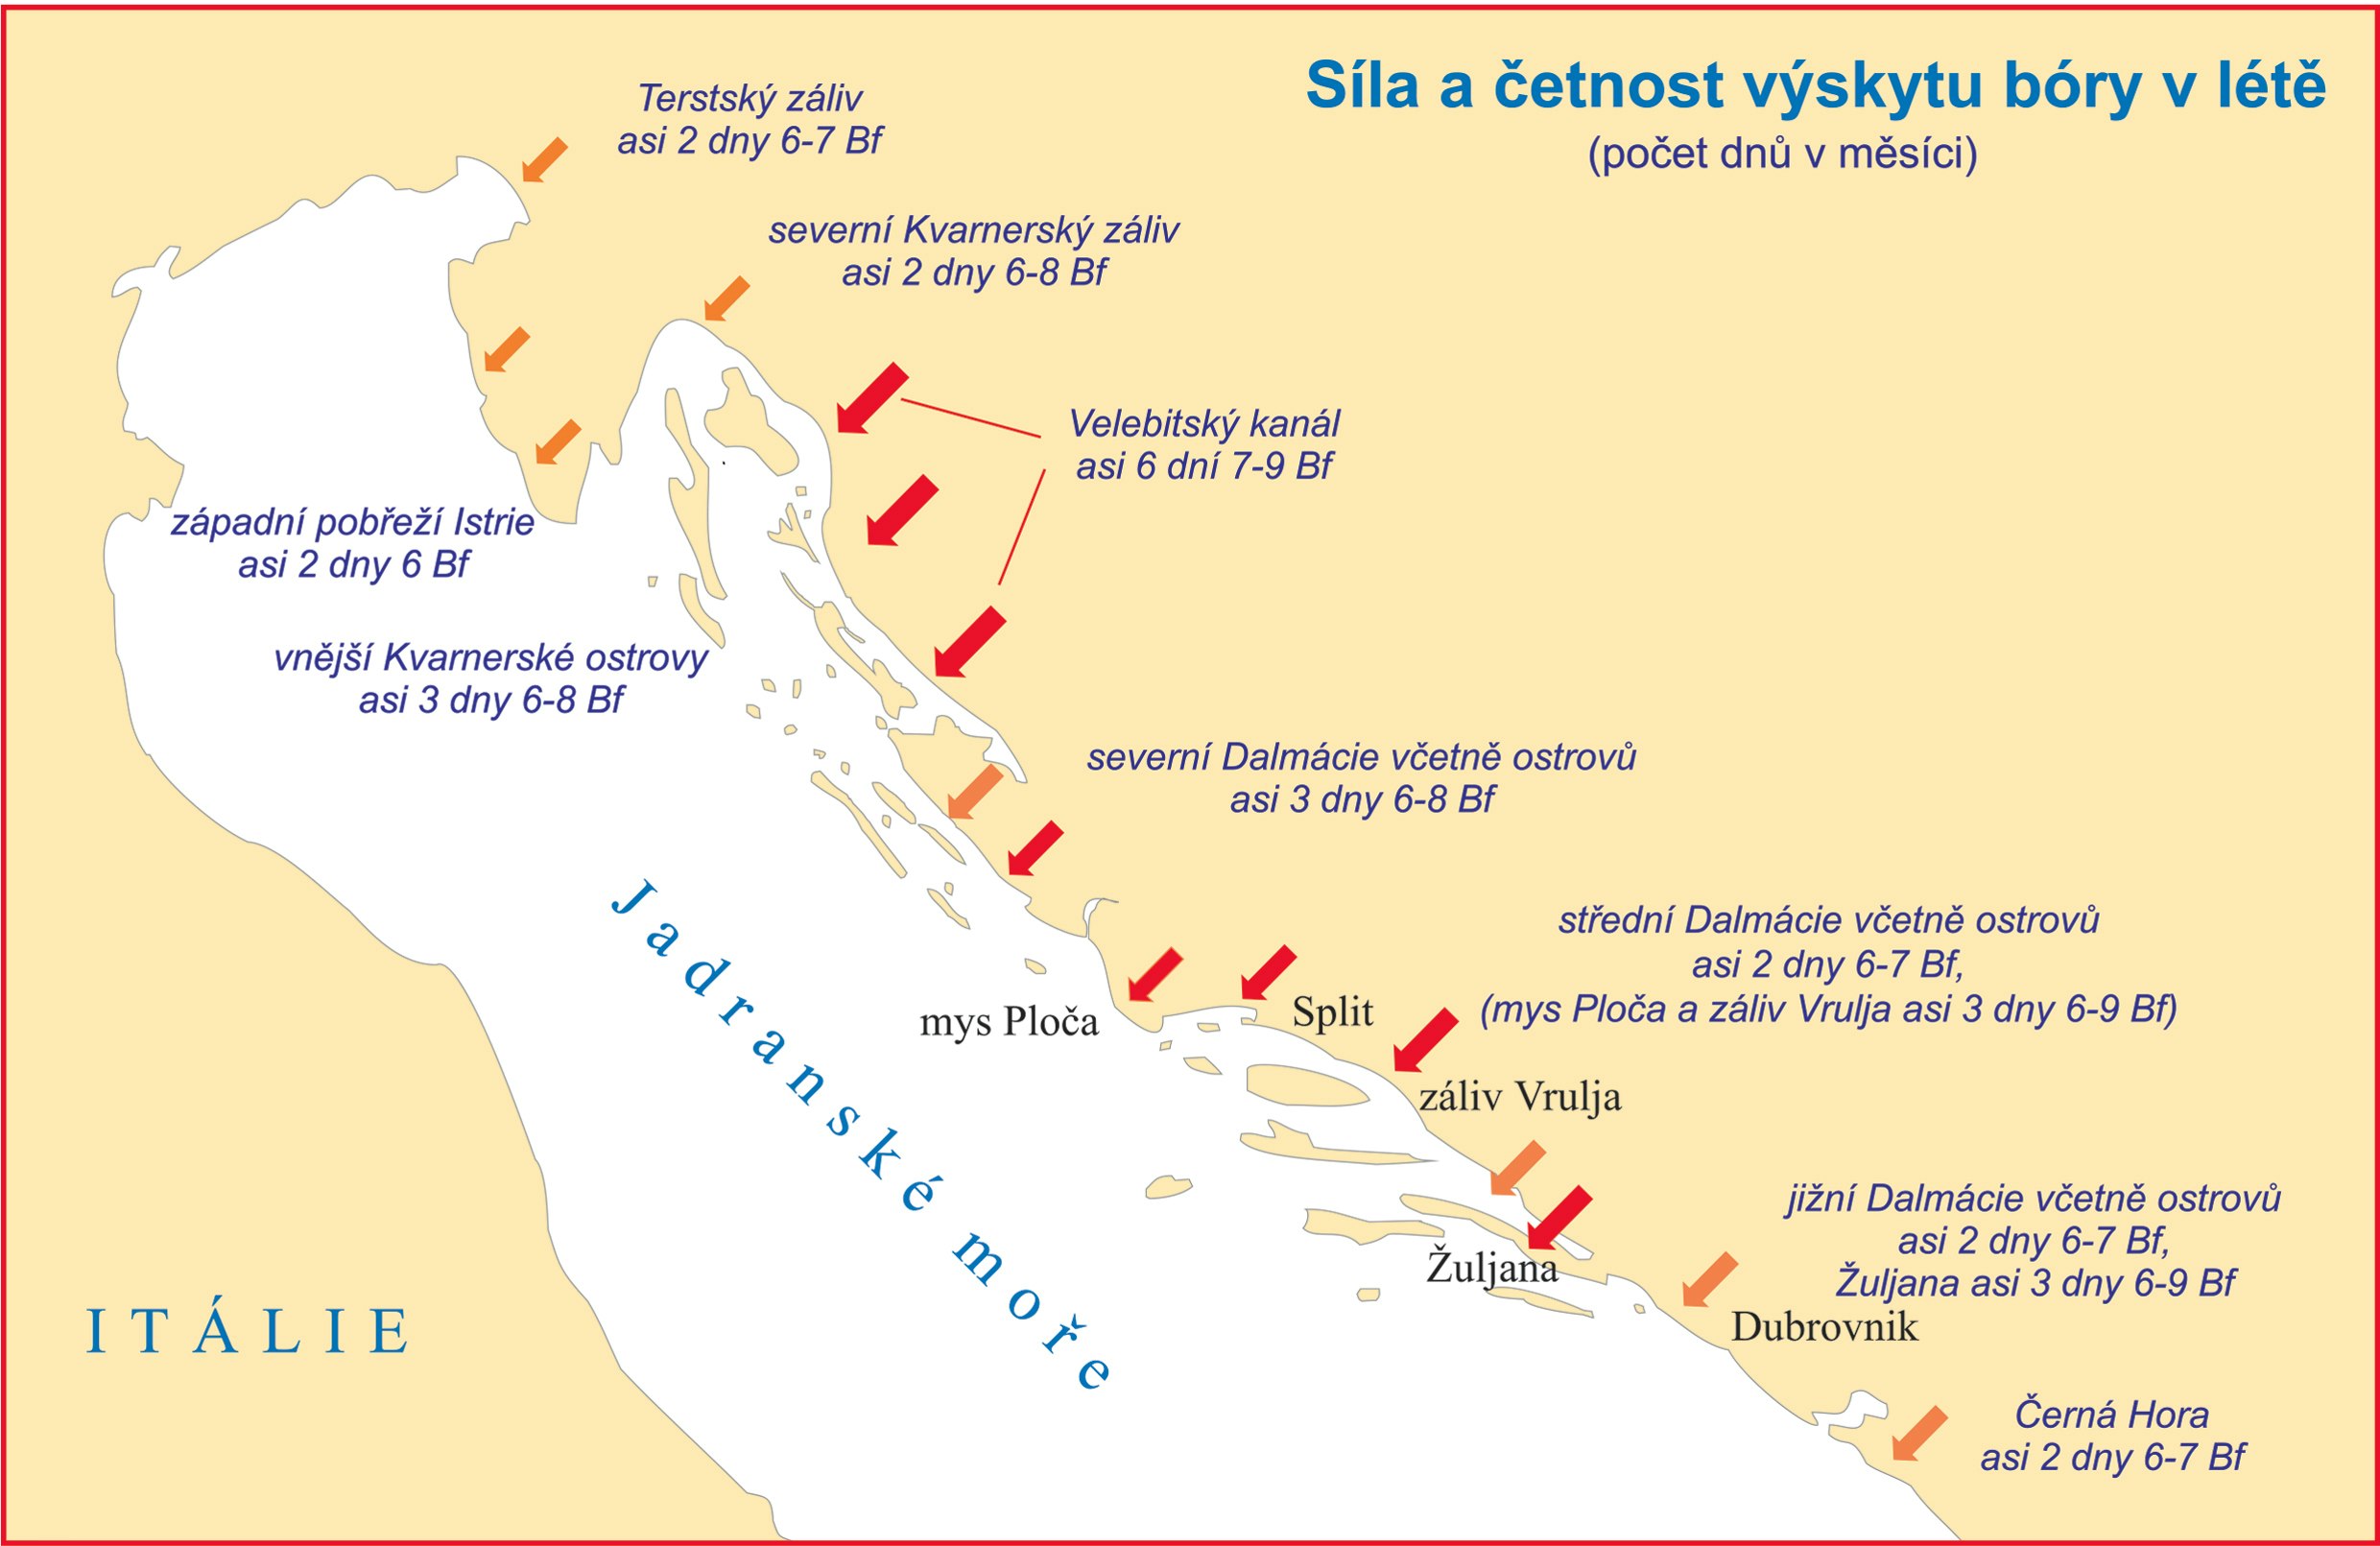 Mapa ukazujúca silu a početnosť výskytu bóry v lete v Jadranskom mori